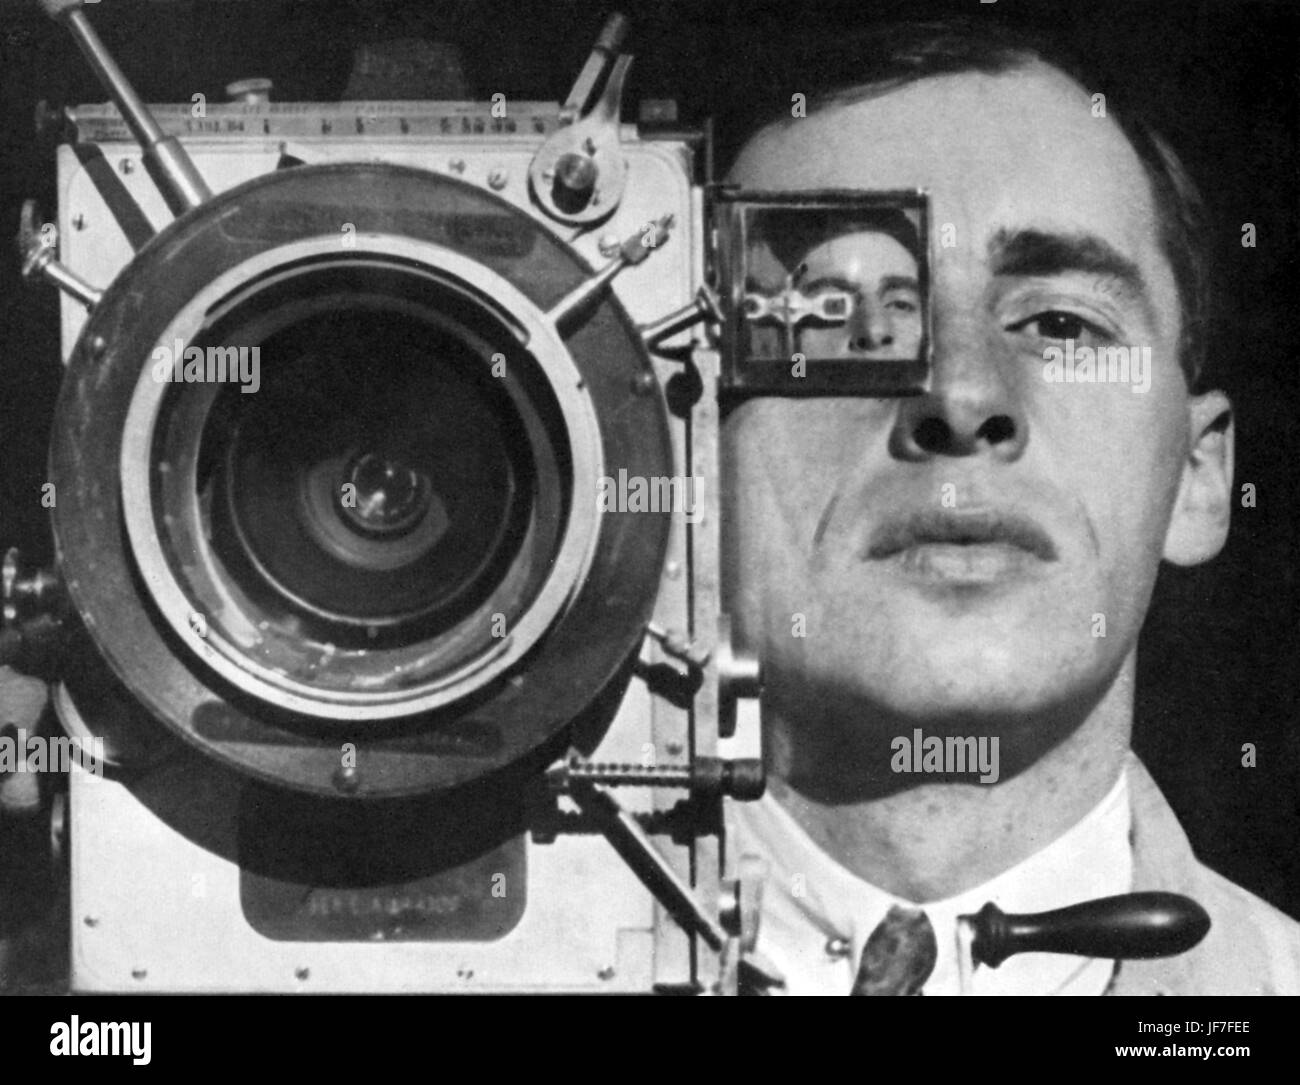 Dziga Vertov /Vertof, seudónimo de David Abelevich Kaufman, dirigió la  película el hombre con la cámara de cine (1929) donde su hermano Mijail  Kaufman plantea con una cámara tomando un autorretrato. Esta